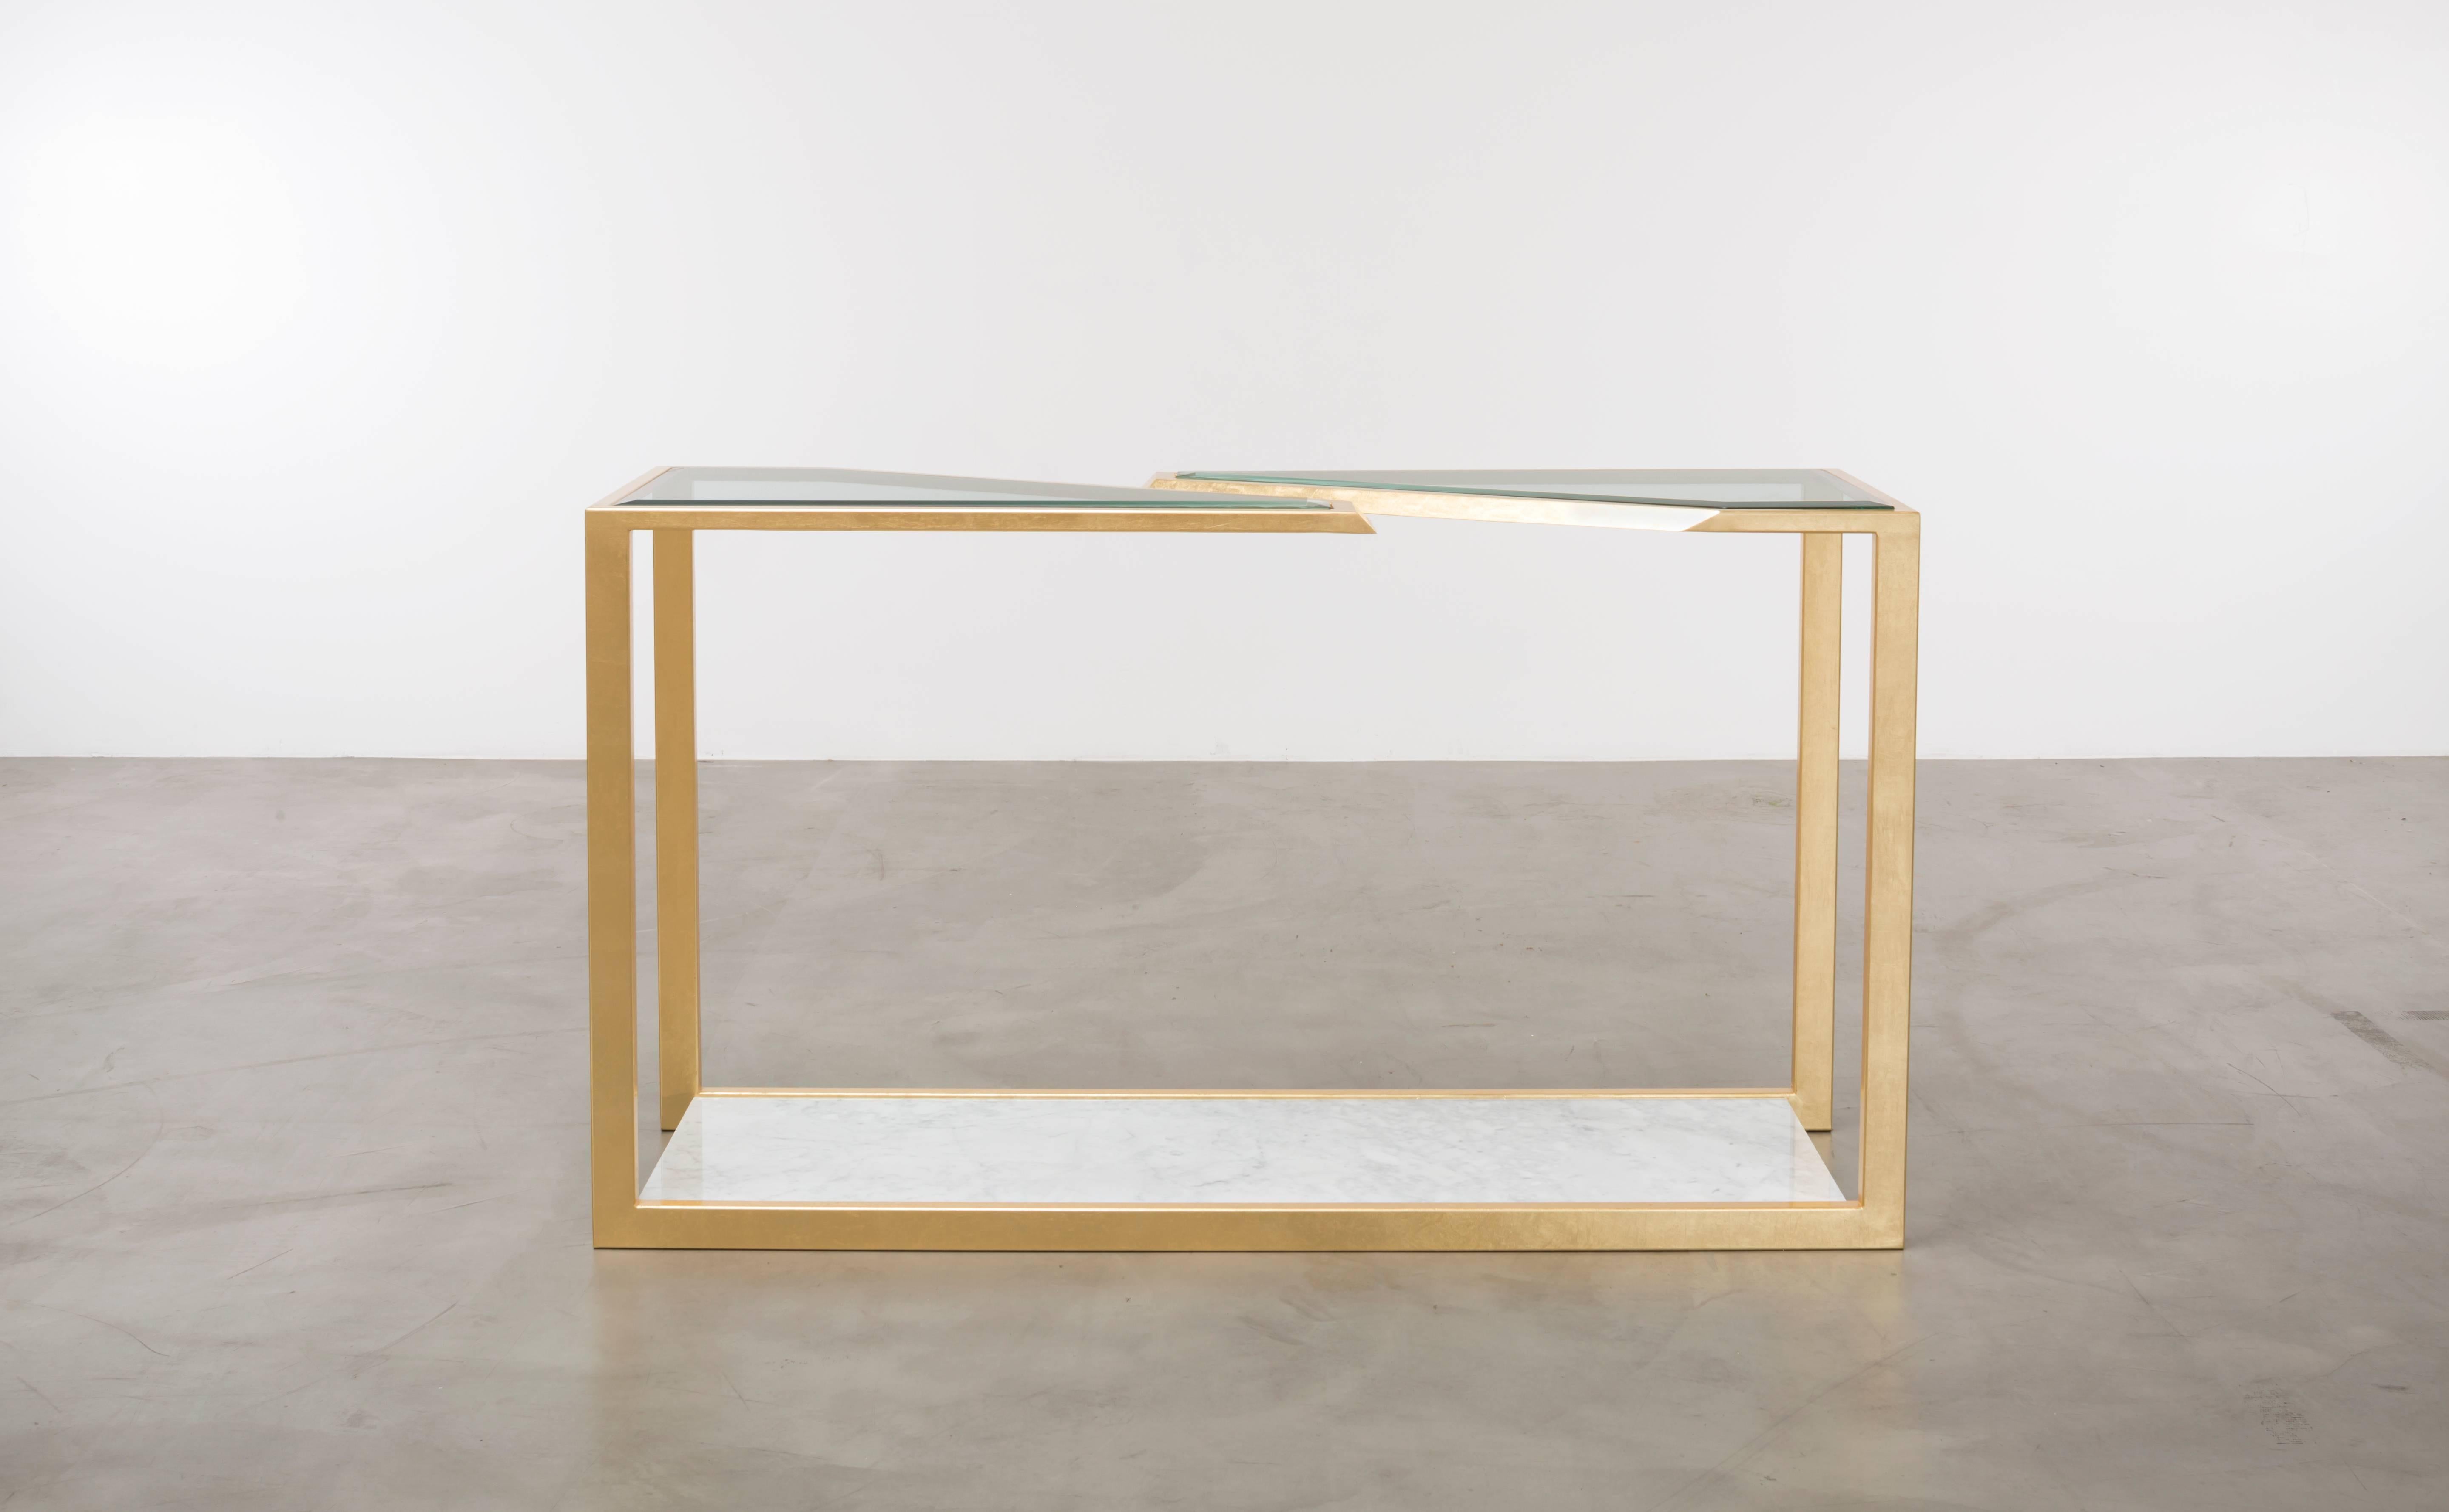 TABLE DE CONSOLE PIERRE - Moderne feuille d'or sur fer avec verre biseauté

Voici la table console Pierre - une pièce moderne étonnante qui ajoute une touche d'élégance et de luxe à n'importe quel espace. Fabriquée avec le plus grand soin, cette